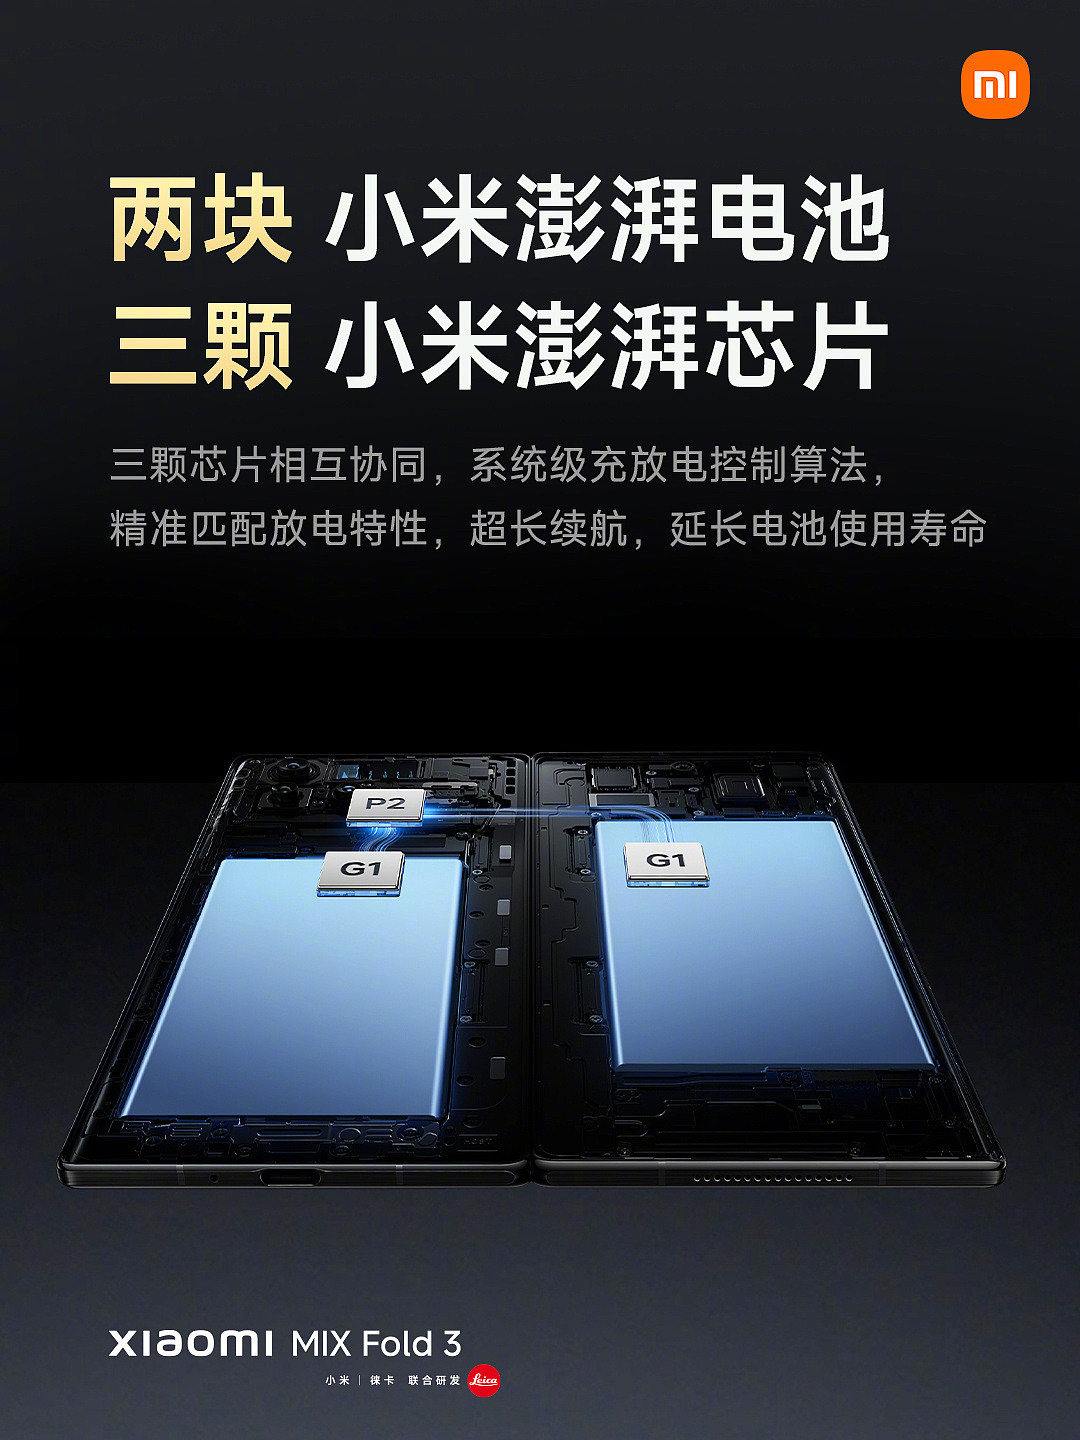 赠 1 年官方延保：小米 MIX Fold 3 折叠屏手机 8899 元起 12 期免息开售 - 5